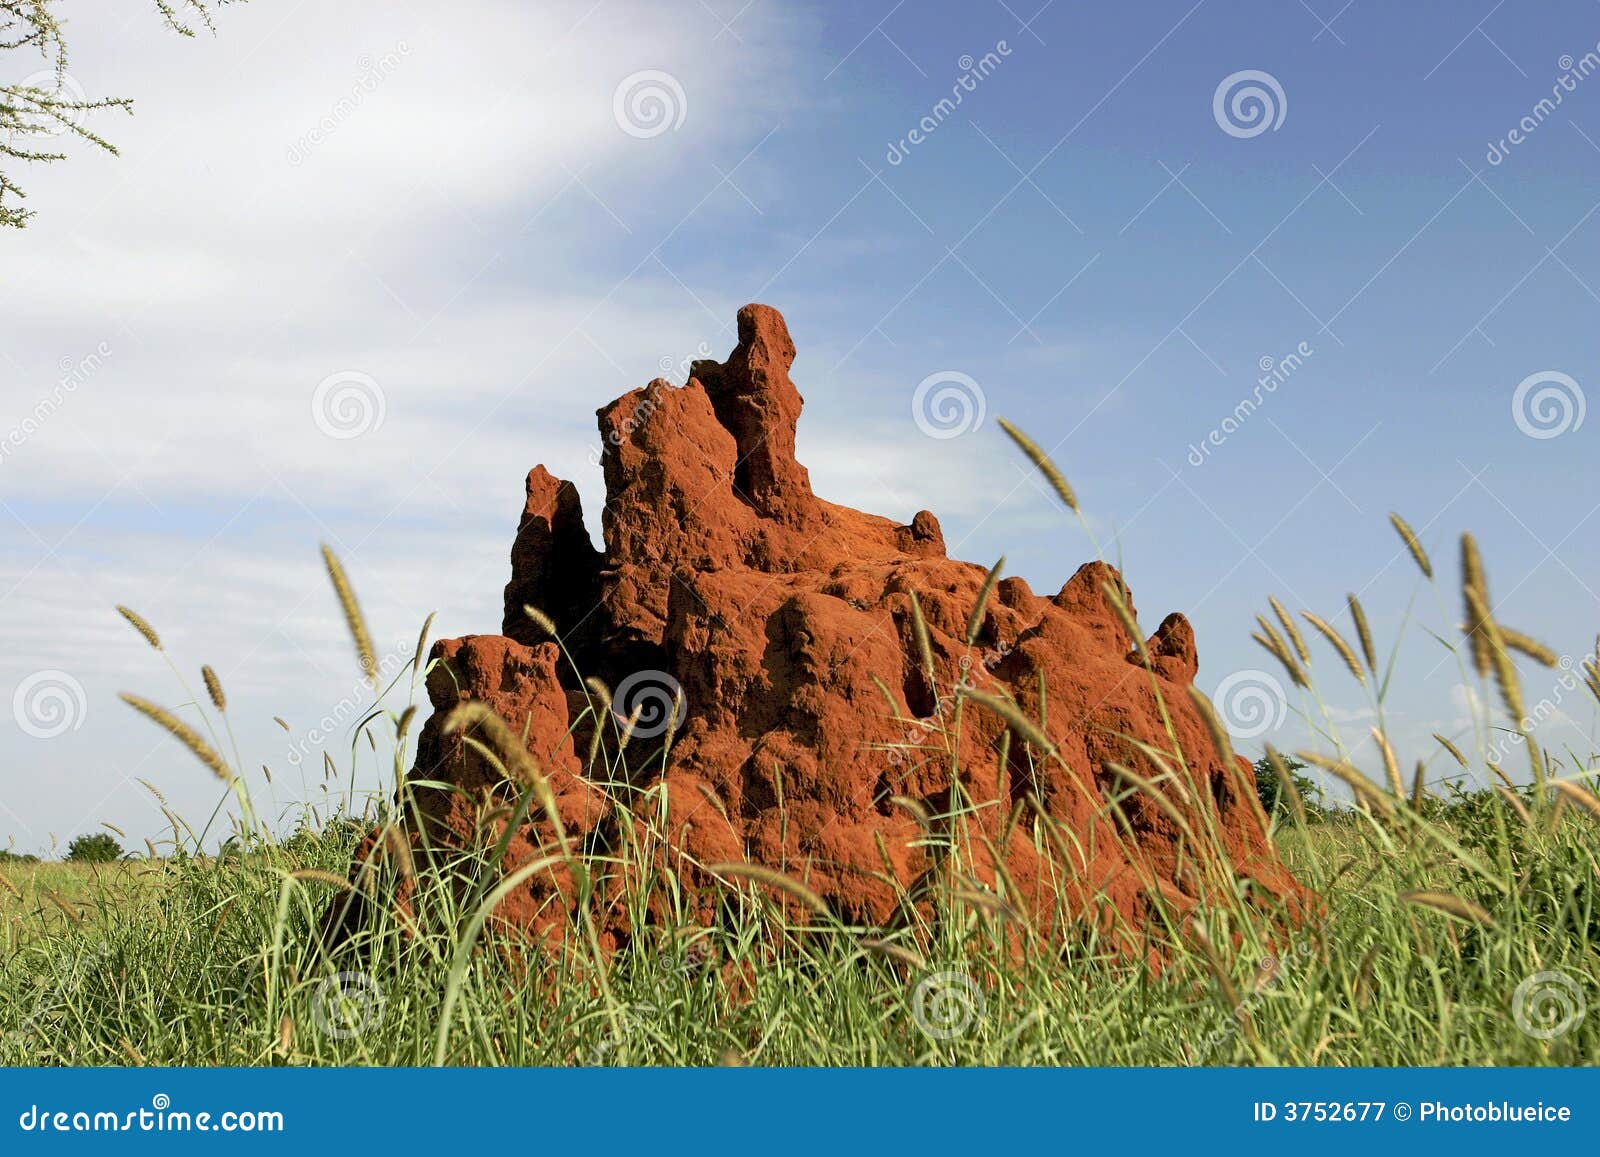 46 termite mound